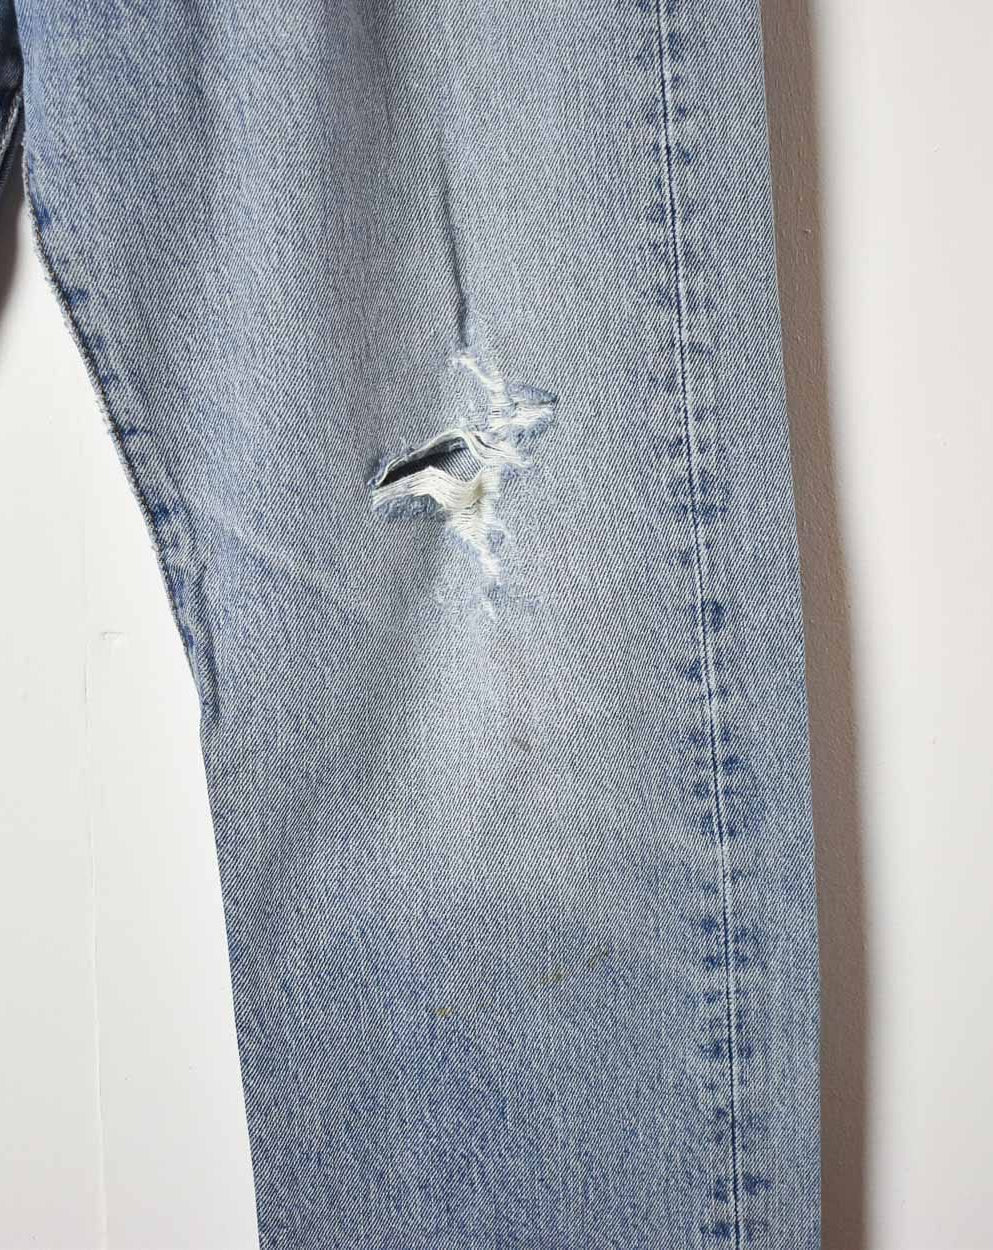 Blue Levi's Distressed 501 Jeans - W34 L30